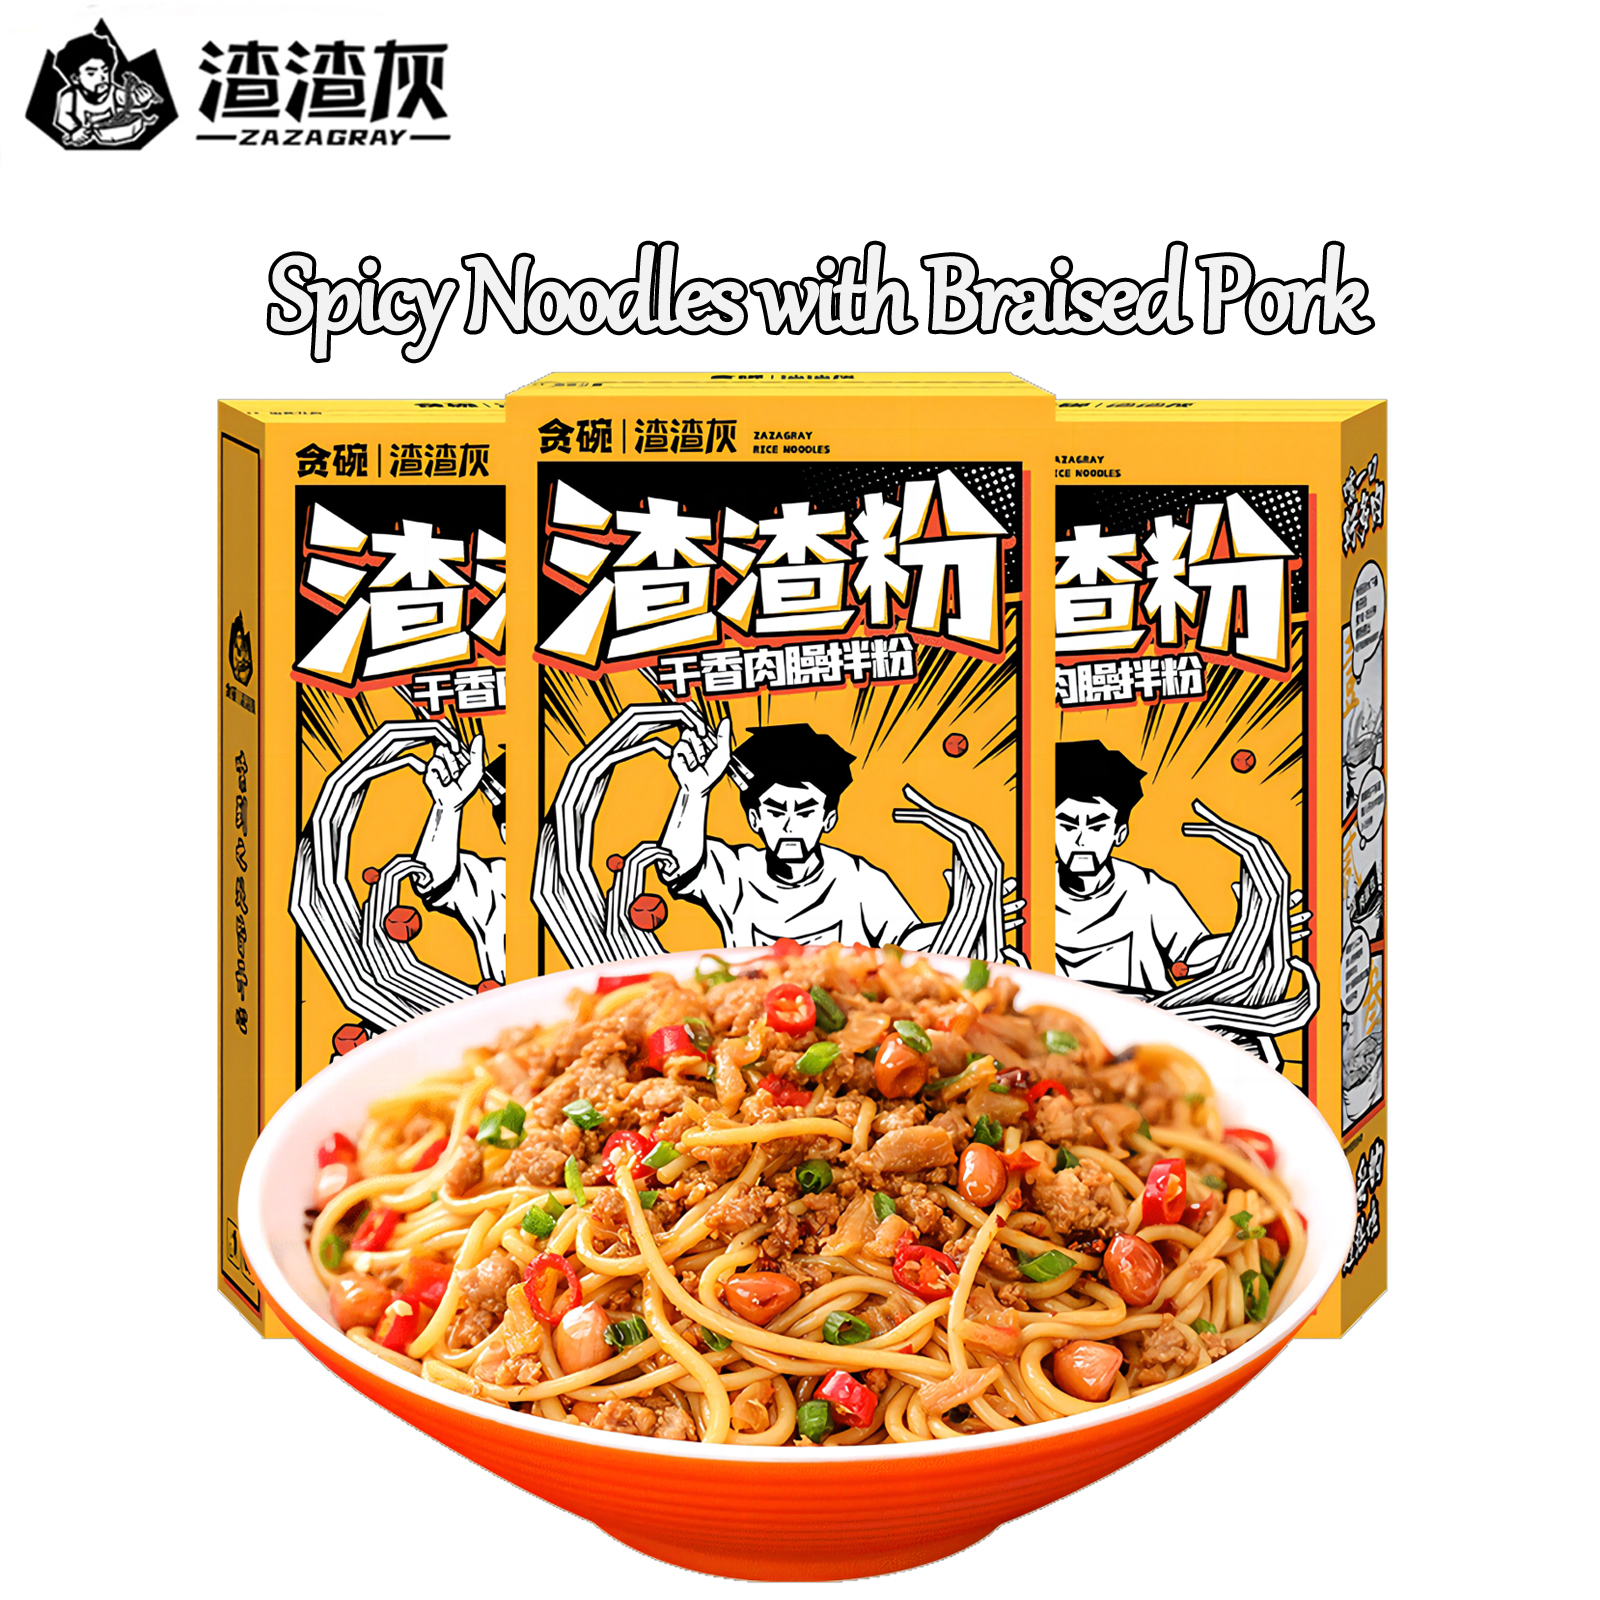 Spicy Rice Nuddelen mat Braised Pork